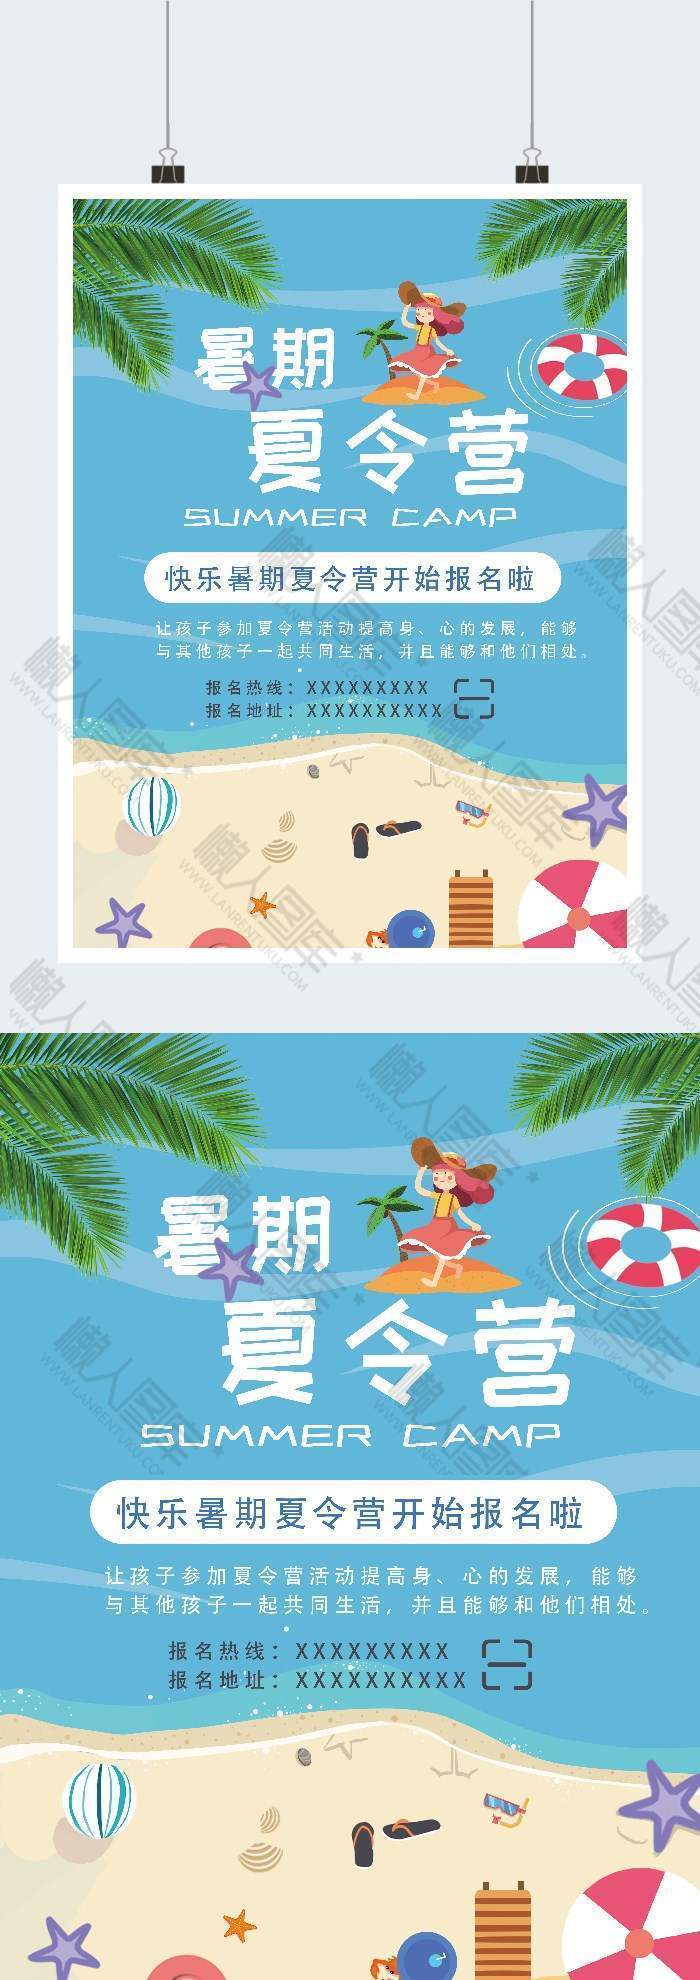 海边沙滩暑期夏令营广告平面海报